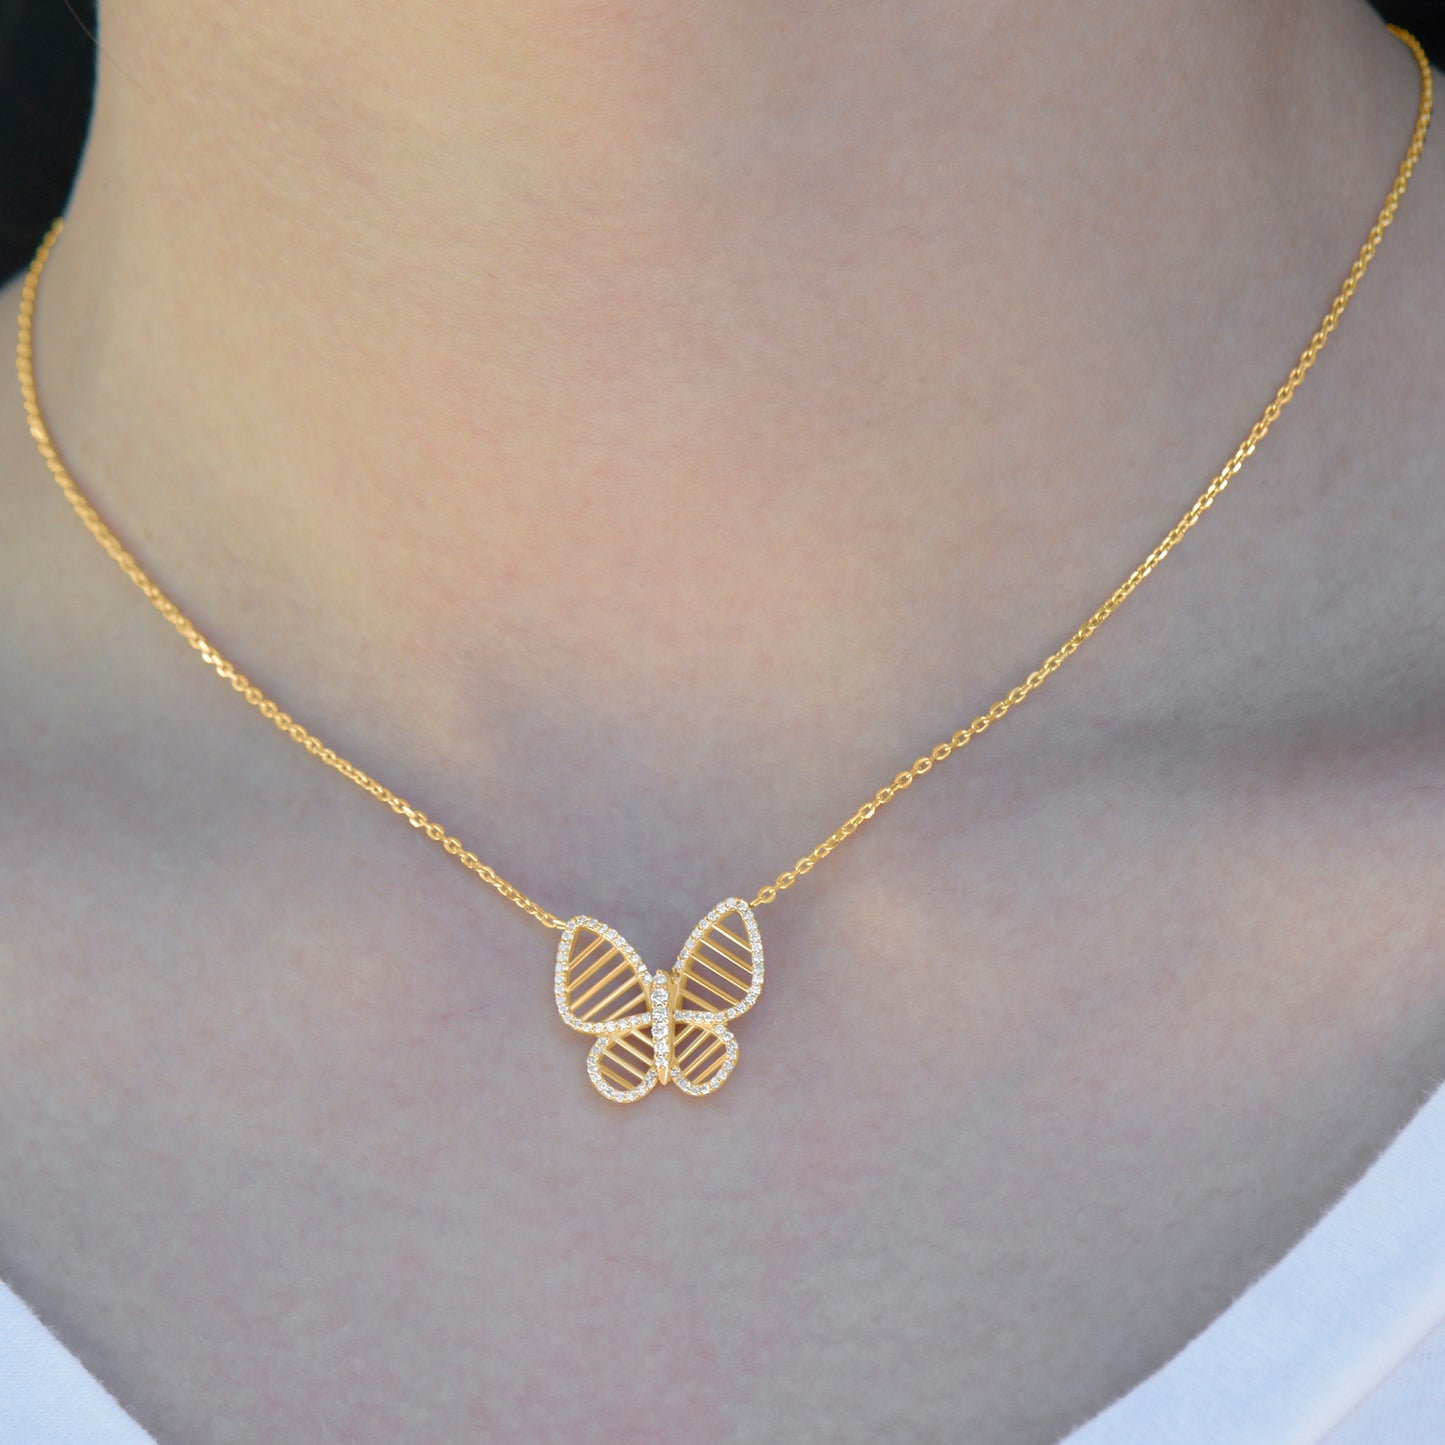 Diamond Butterfly necklace